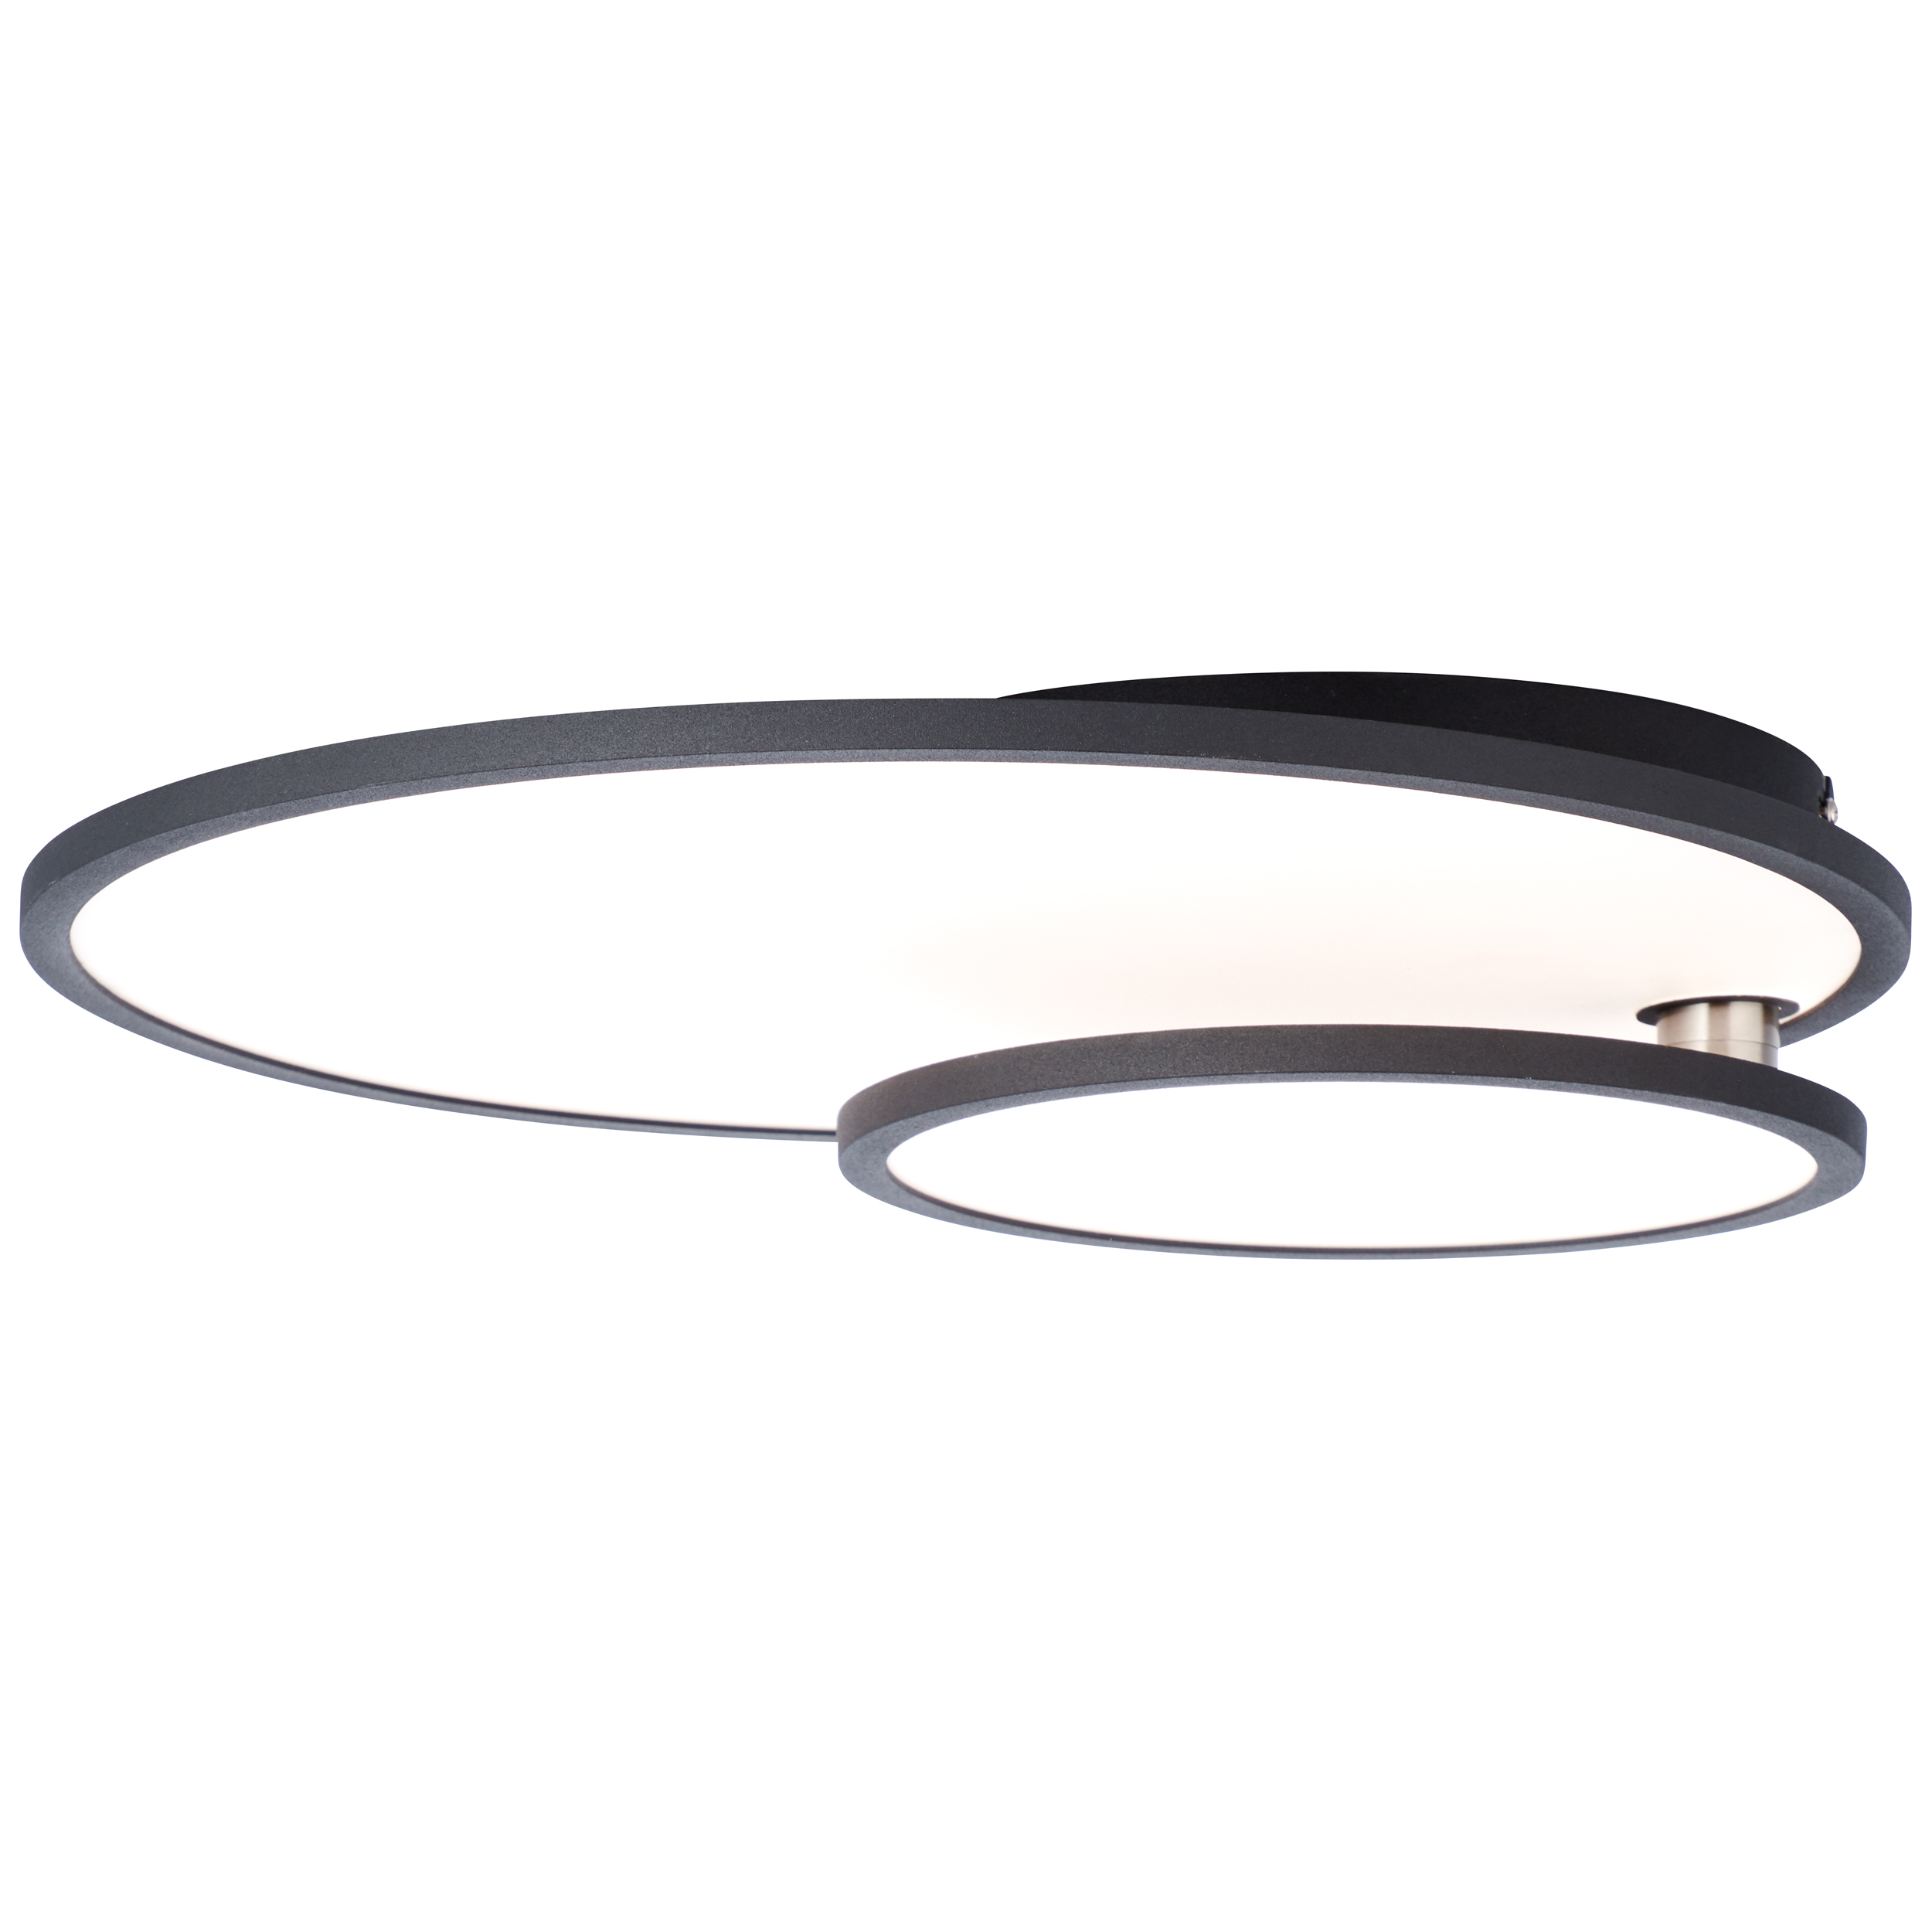 Bility LED Deckenaufbau-Paneel 61x45cm schwarz/weiß easyDim